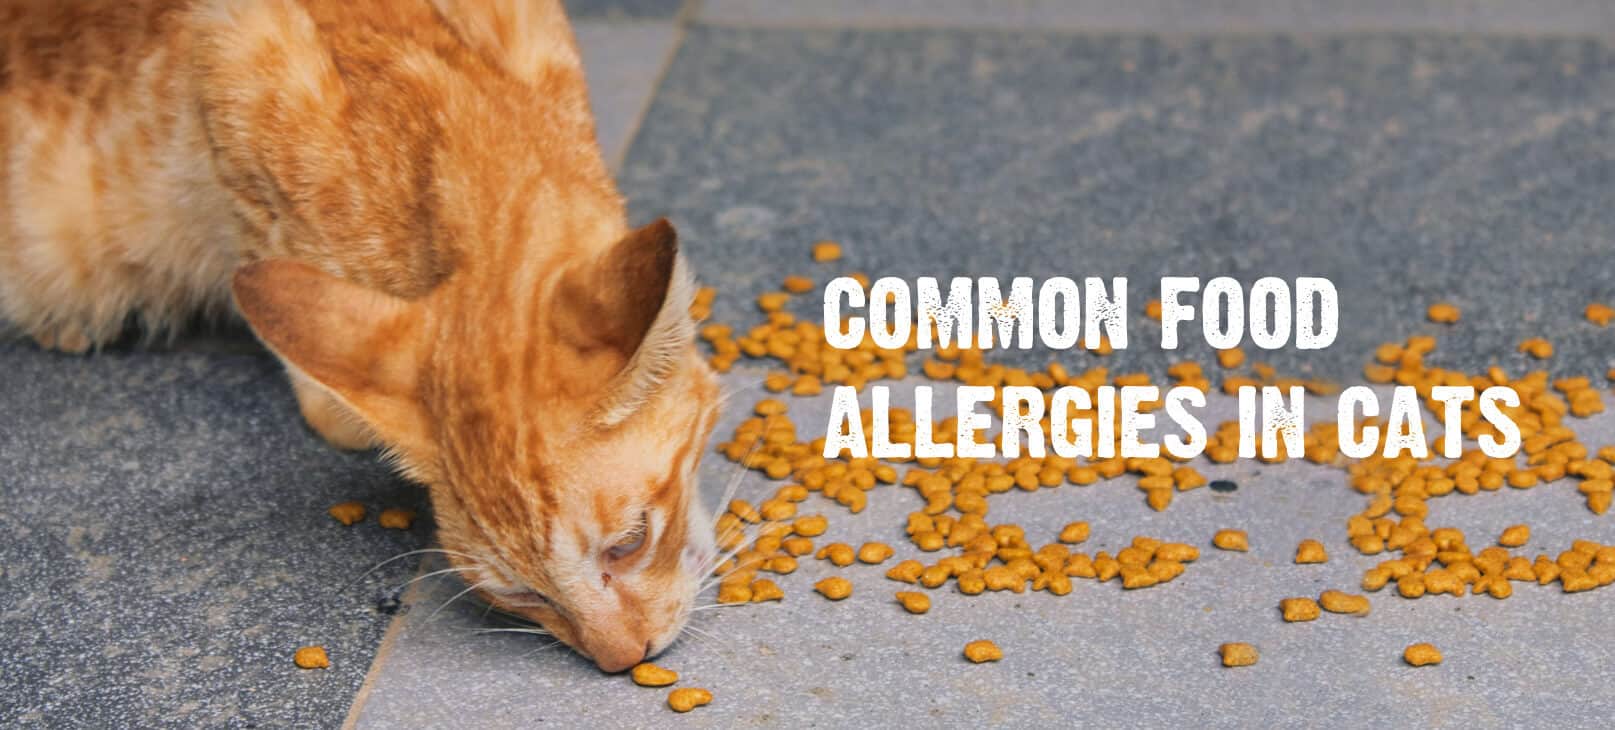 Feline allergies, environmental allergies and food alergies in cats.